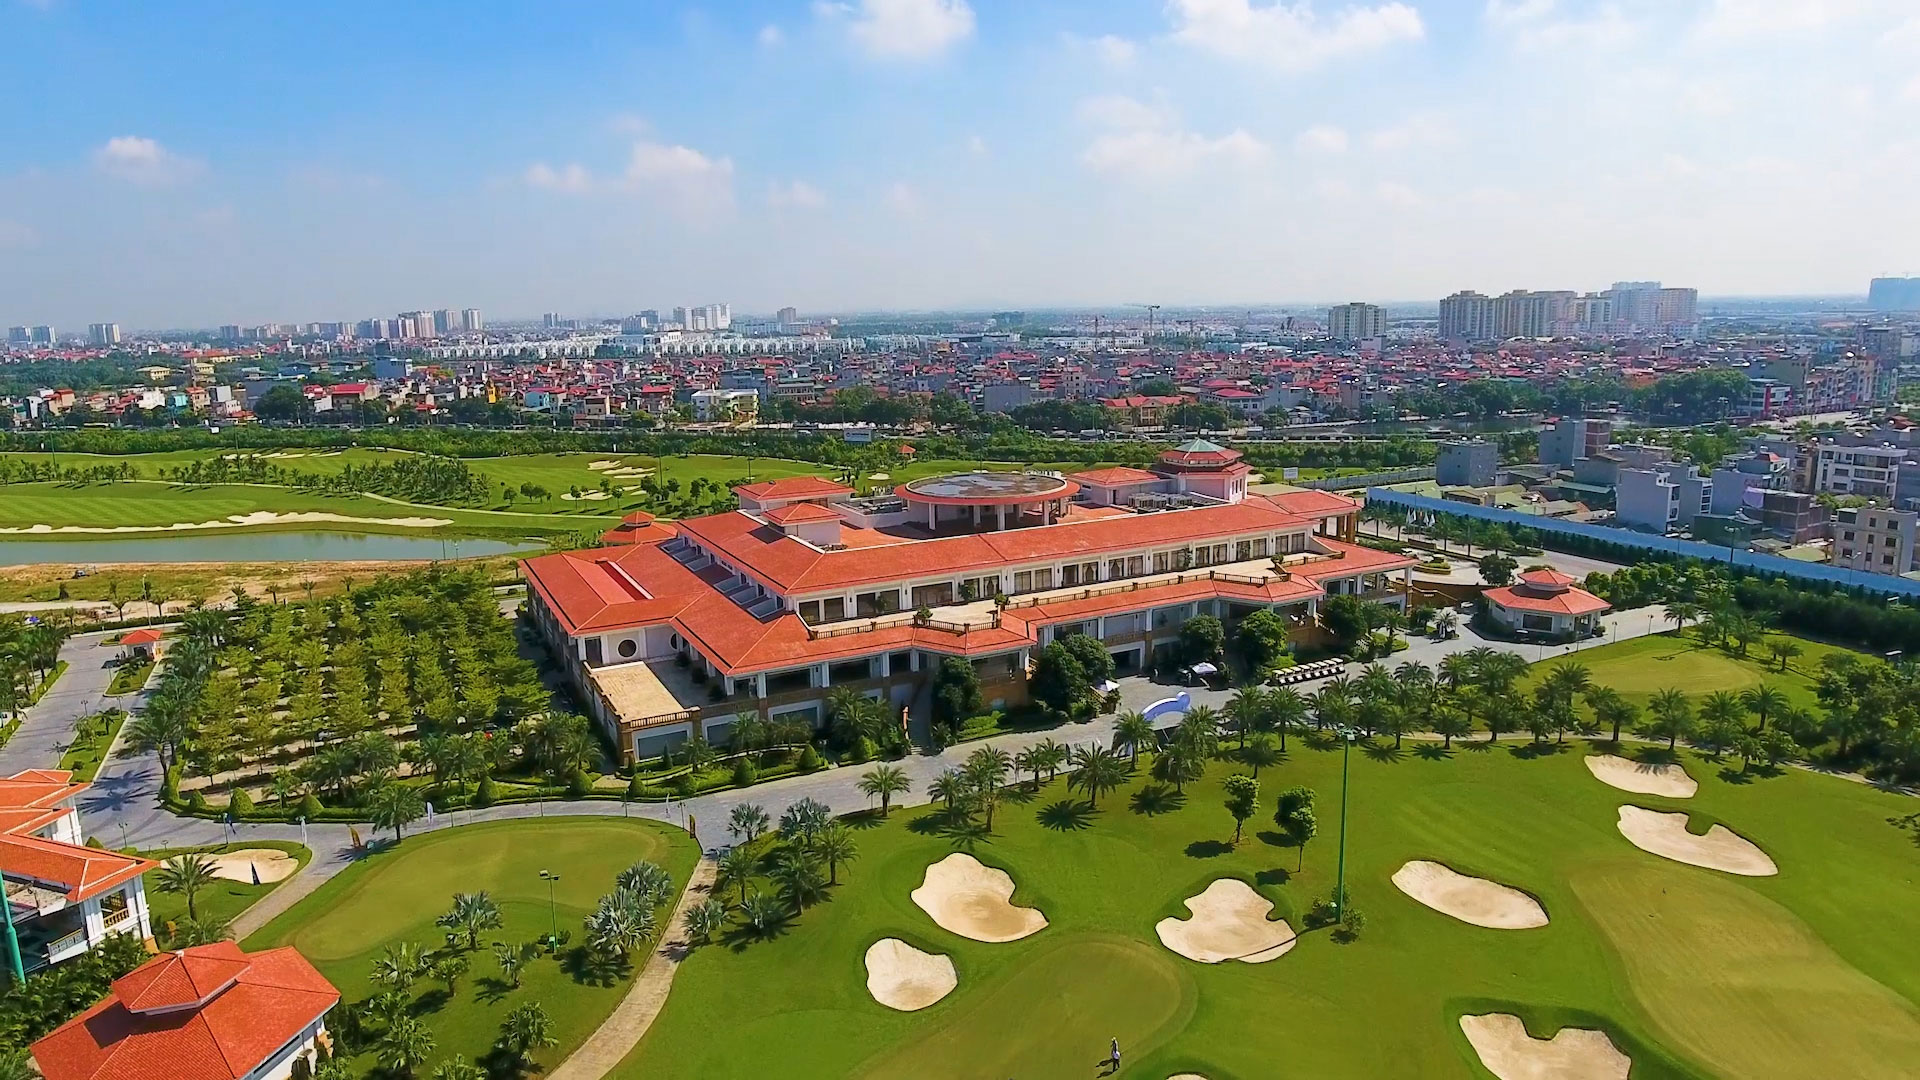 Sân golf Long Biên - 1 trong 5 sân golf đoạt giải năm 2019